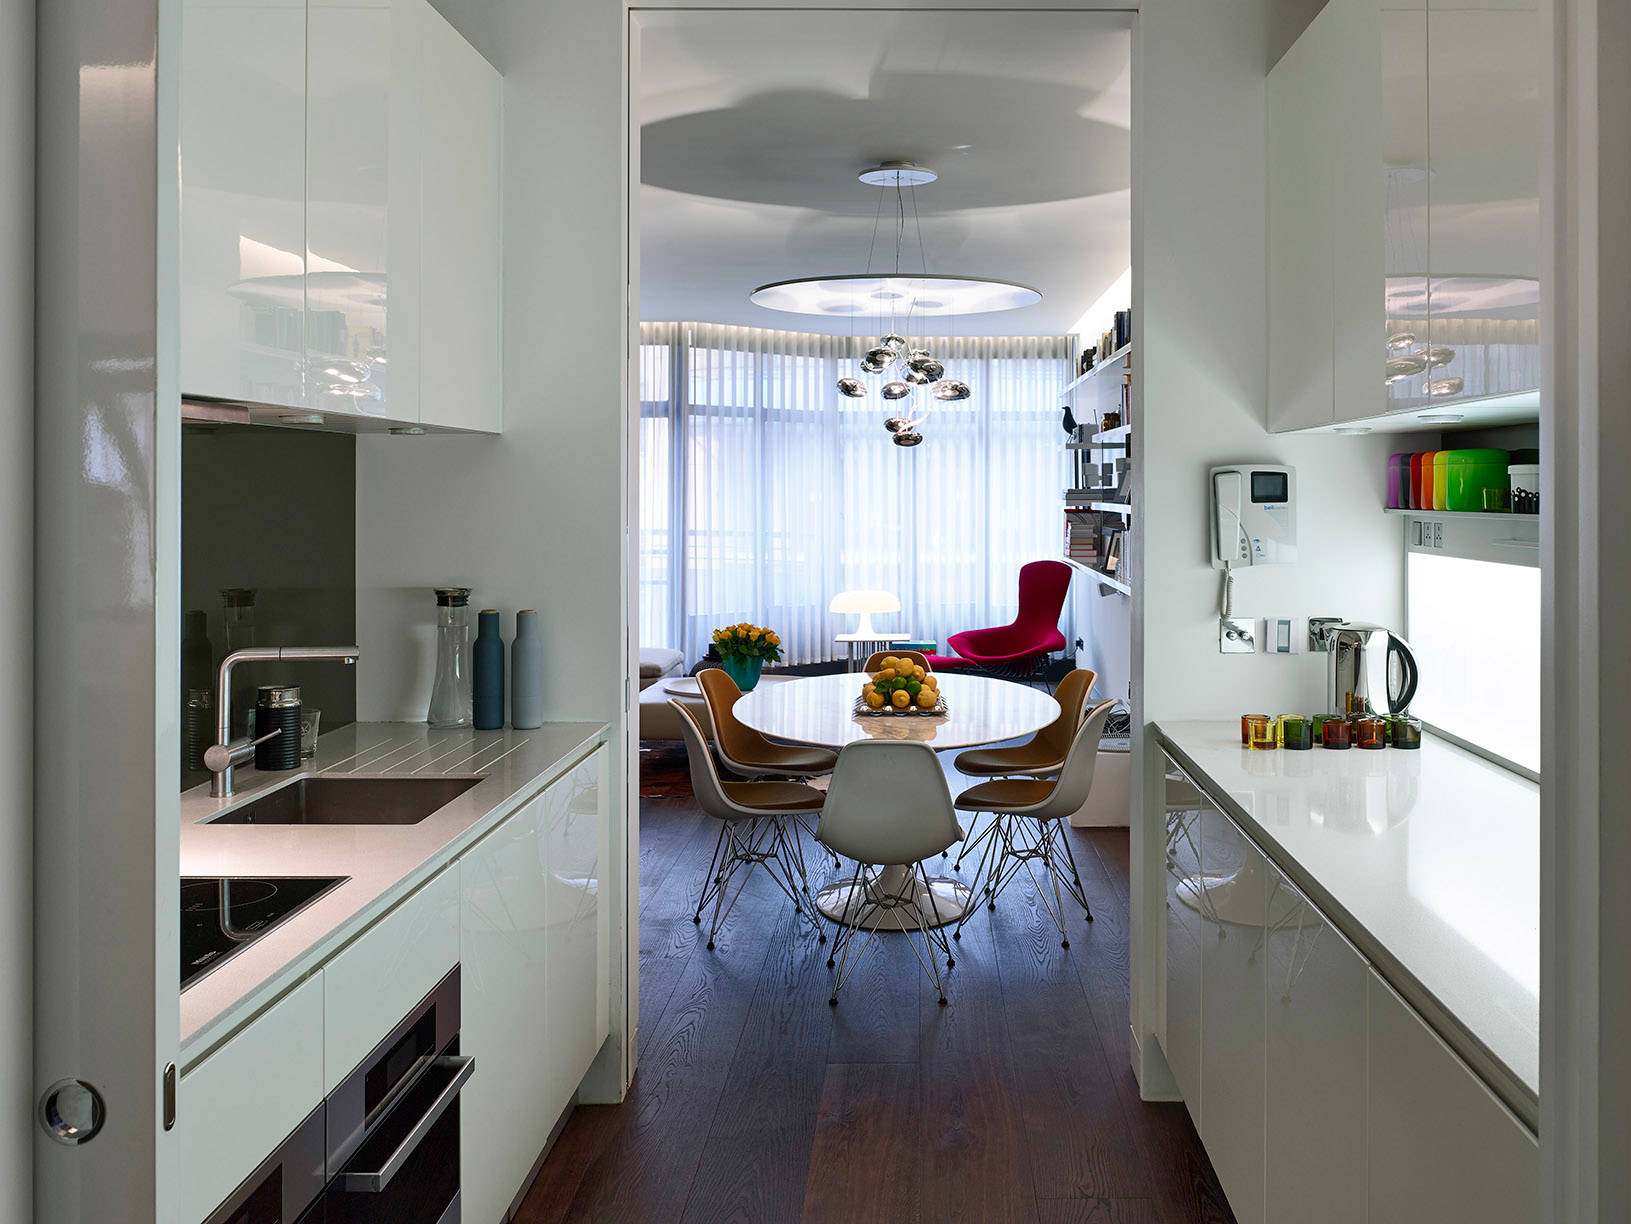 Узкая длинная кухня: оптимальное использование пространства